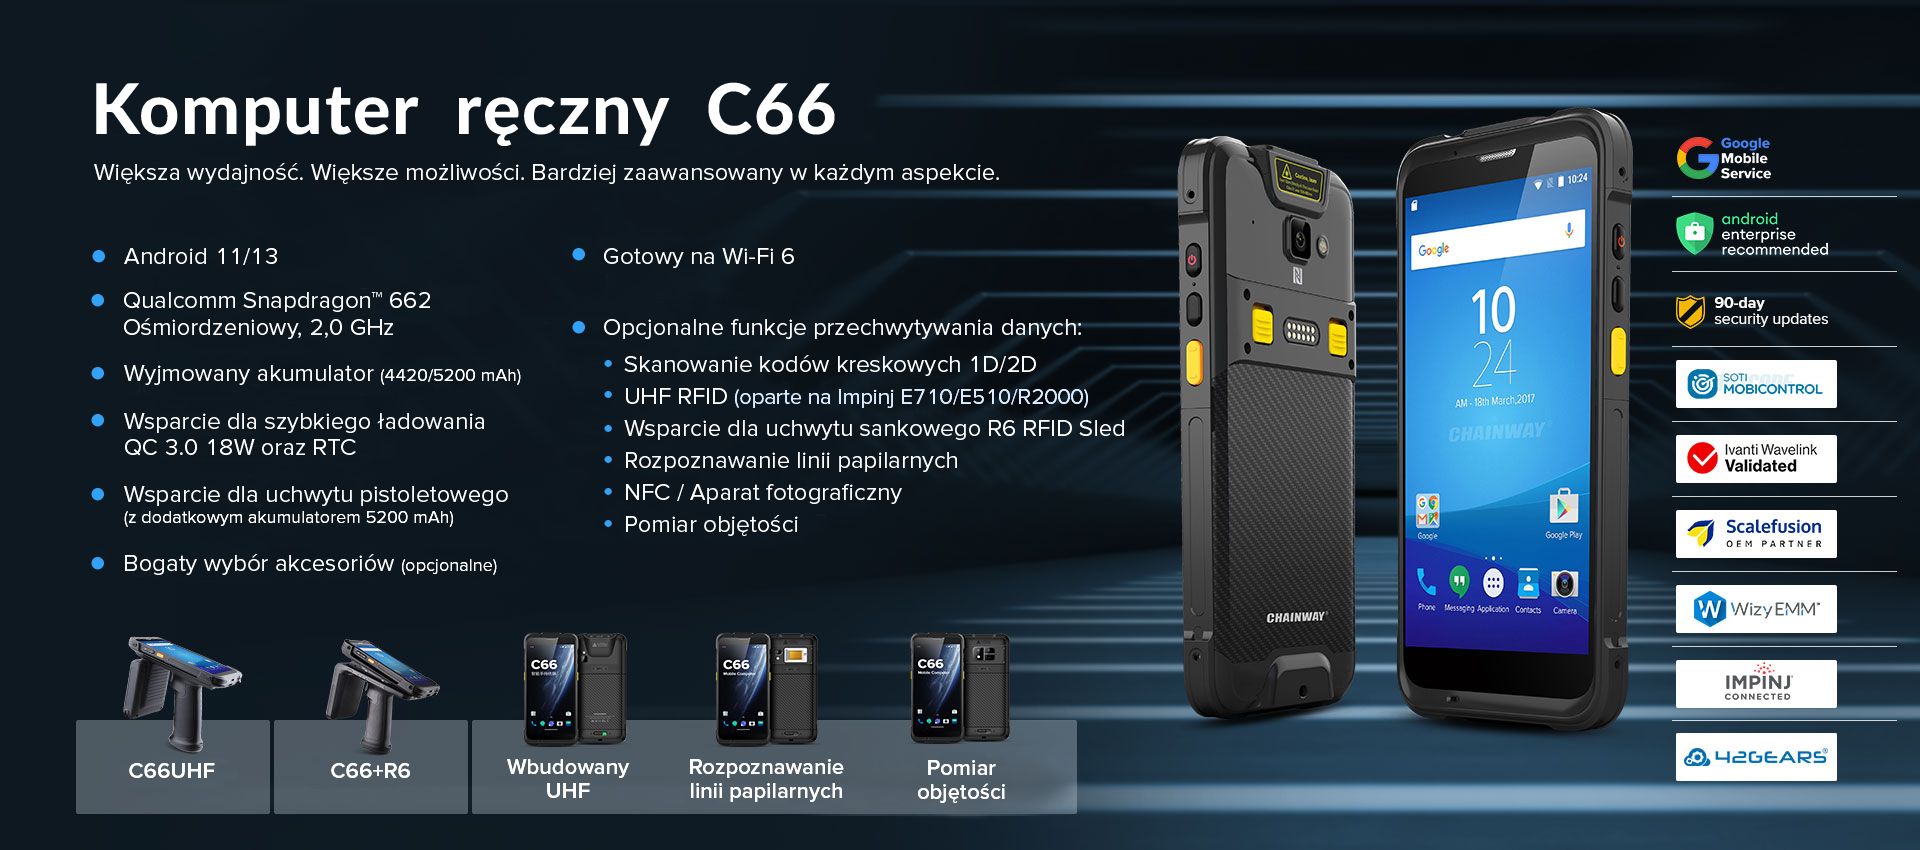 C66 Komputer mobilny - Android 11/13 - Większa wydajność, większe możliwości, bardziej zaawansowany w każdym aspekcie